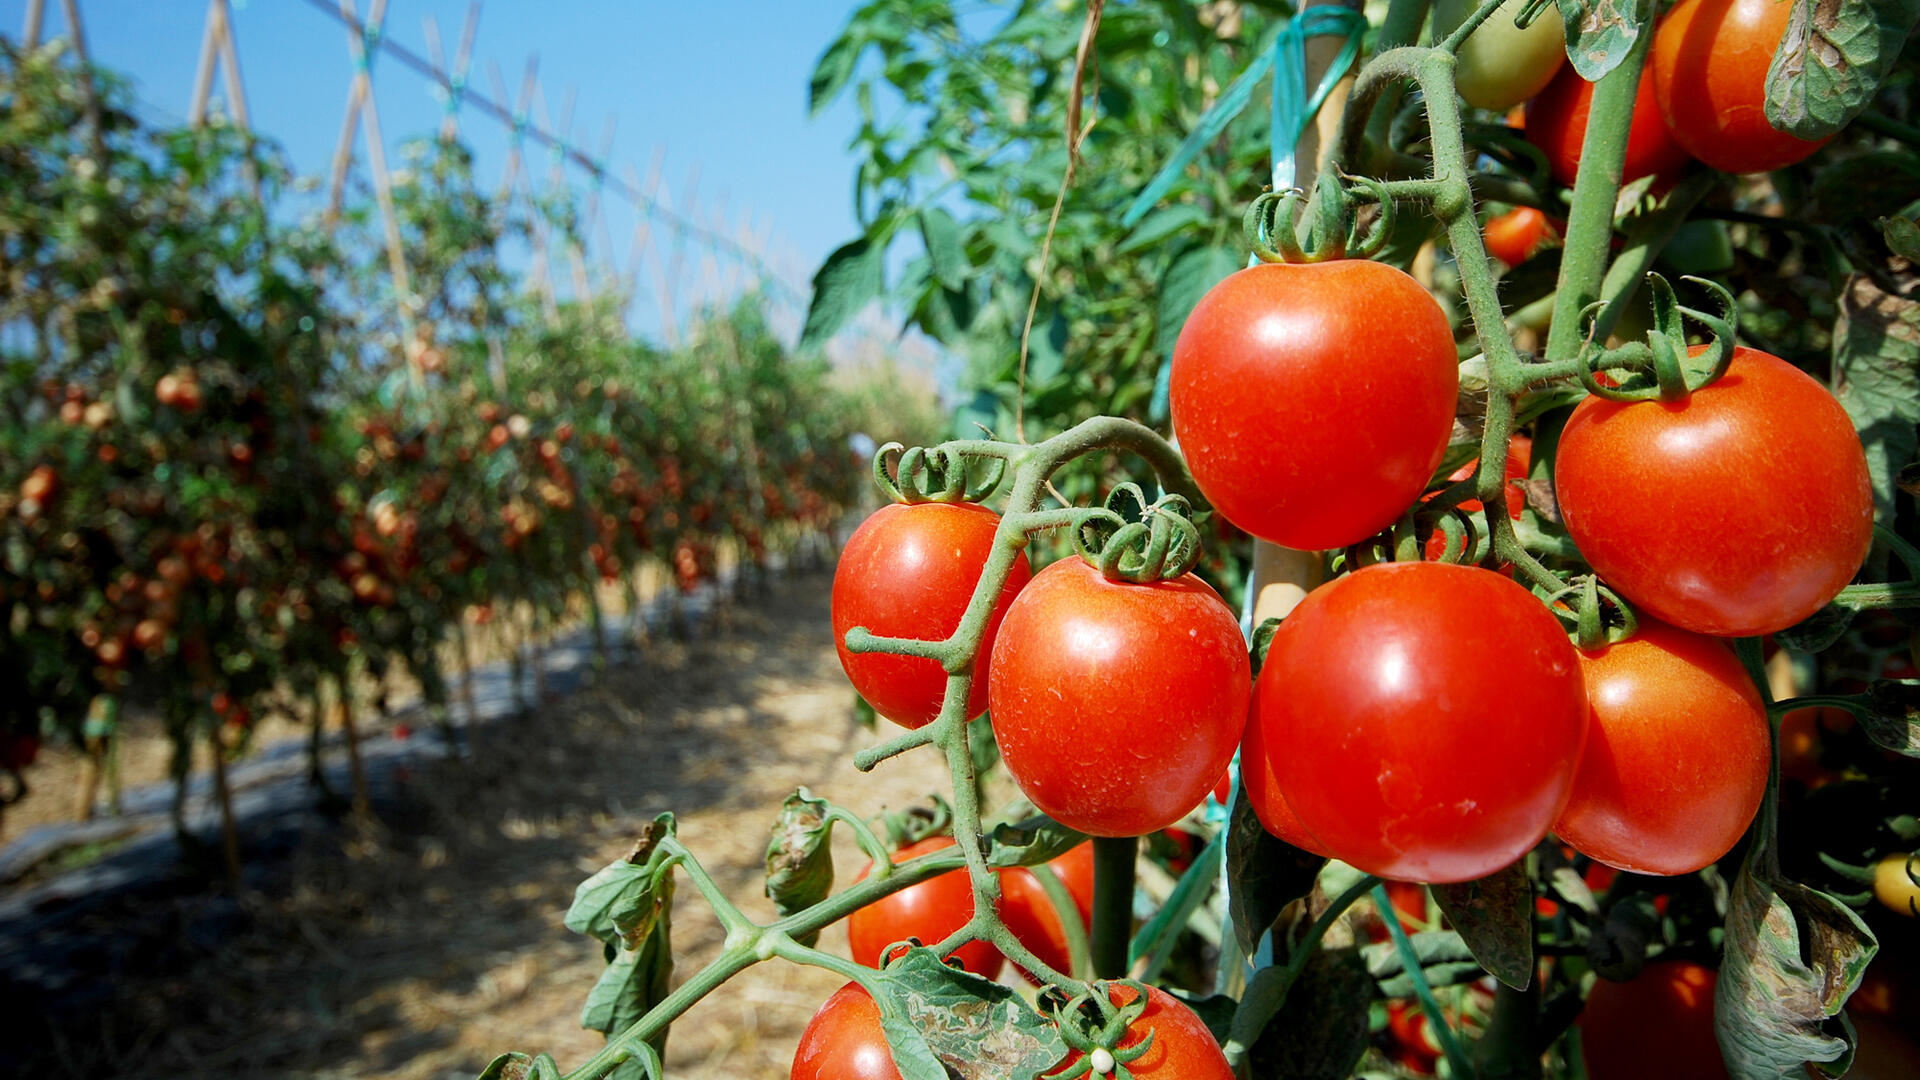 עגבניה גידול עגבניות חווה